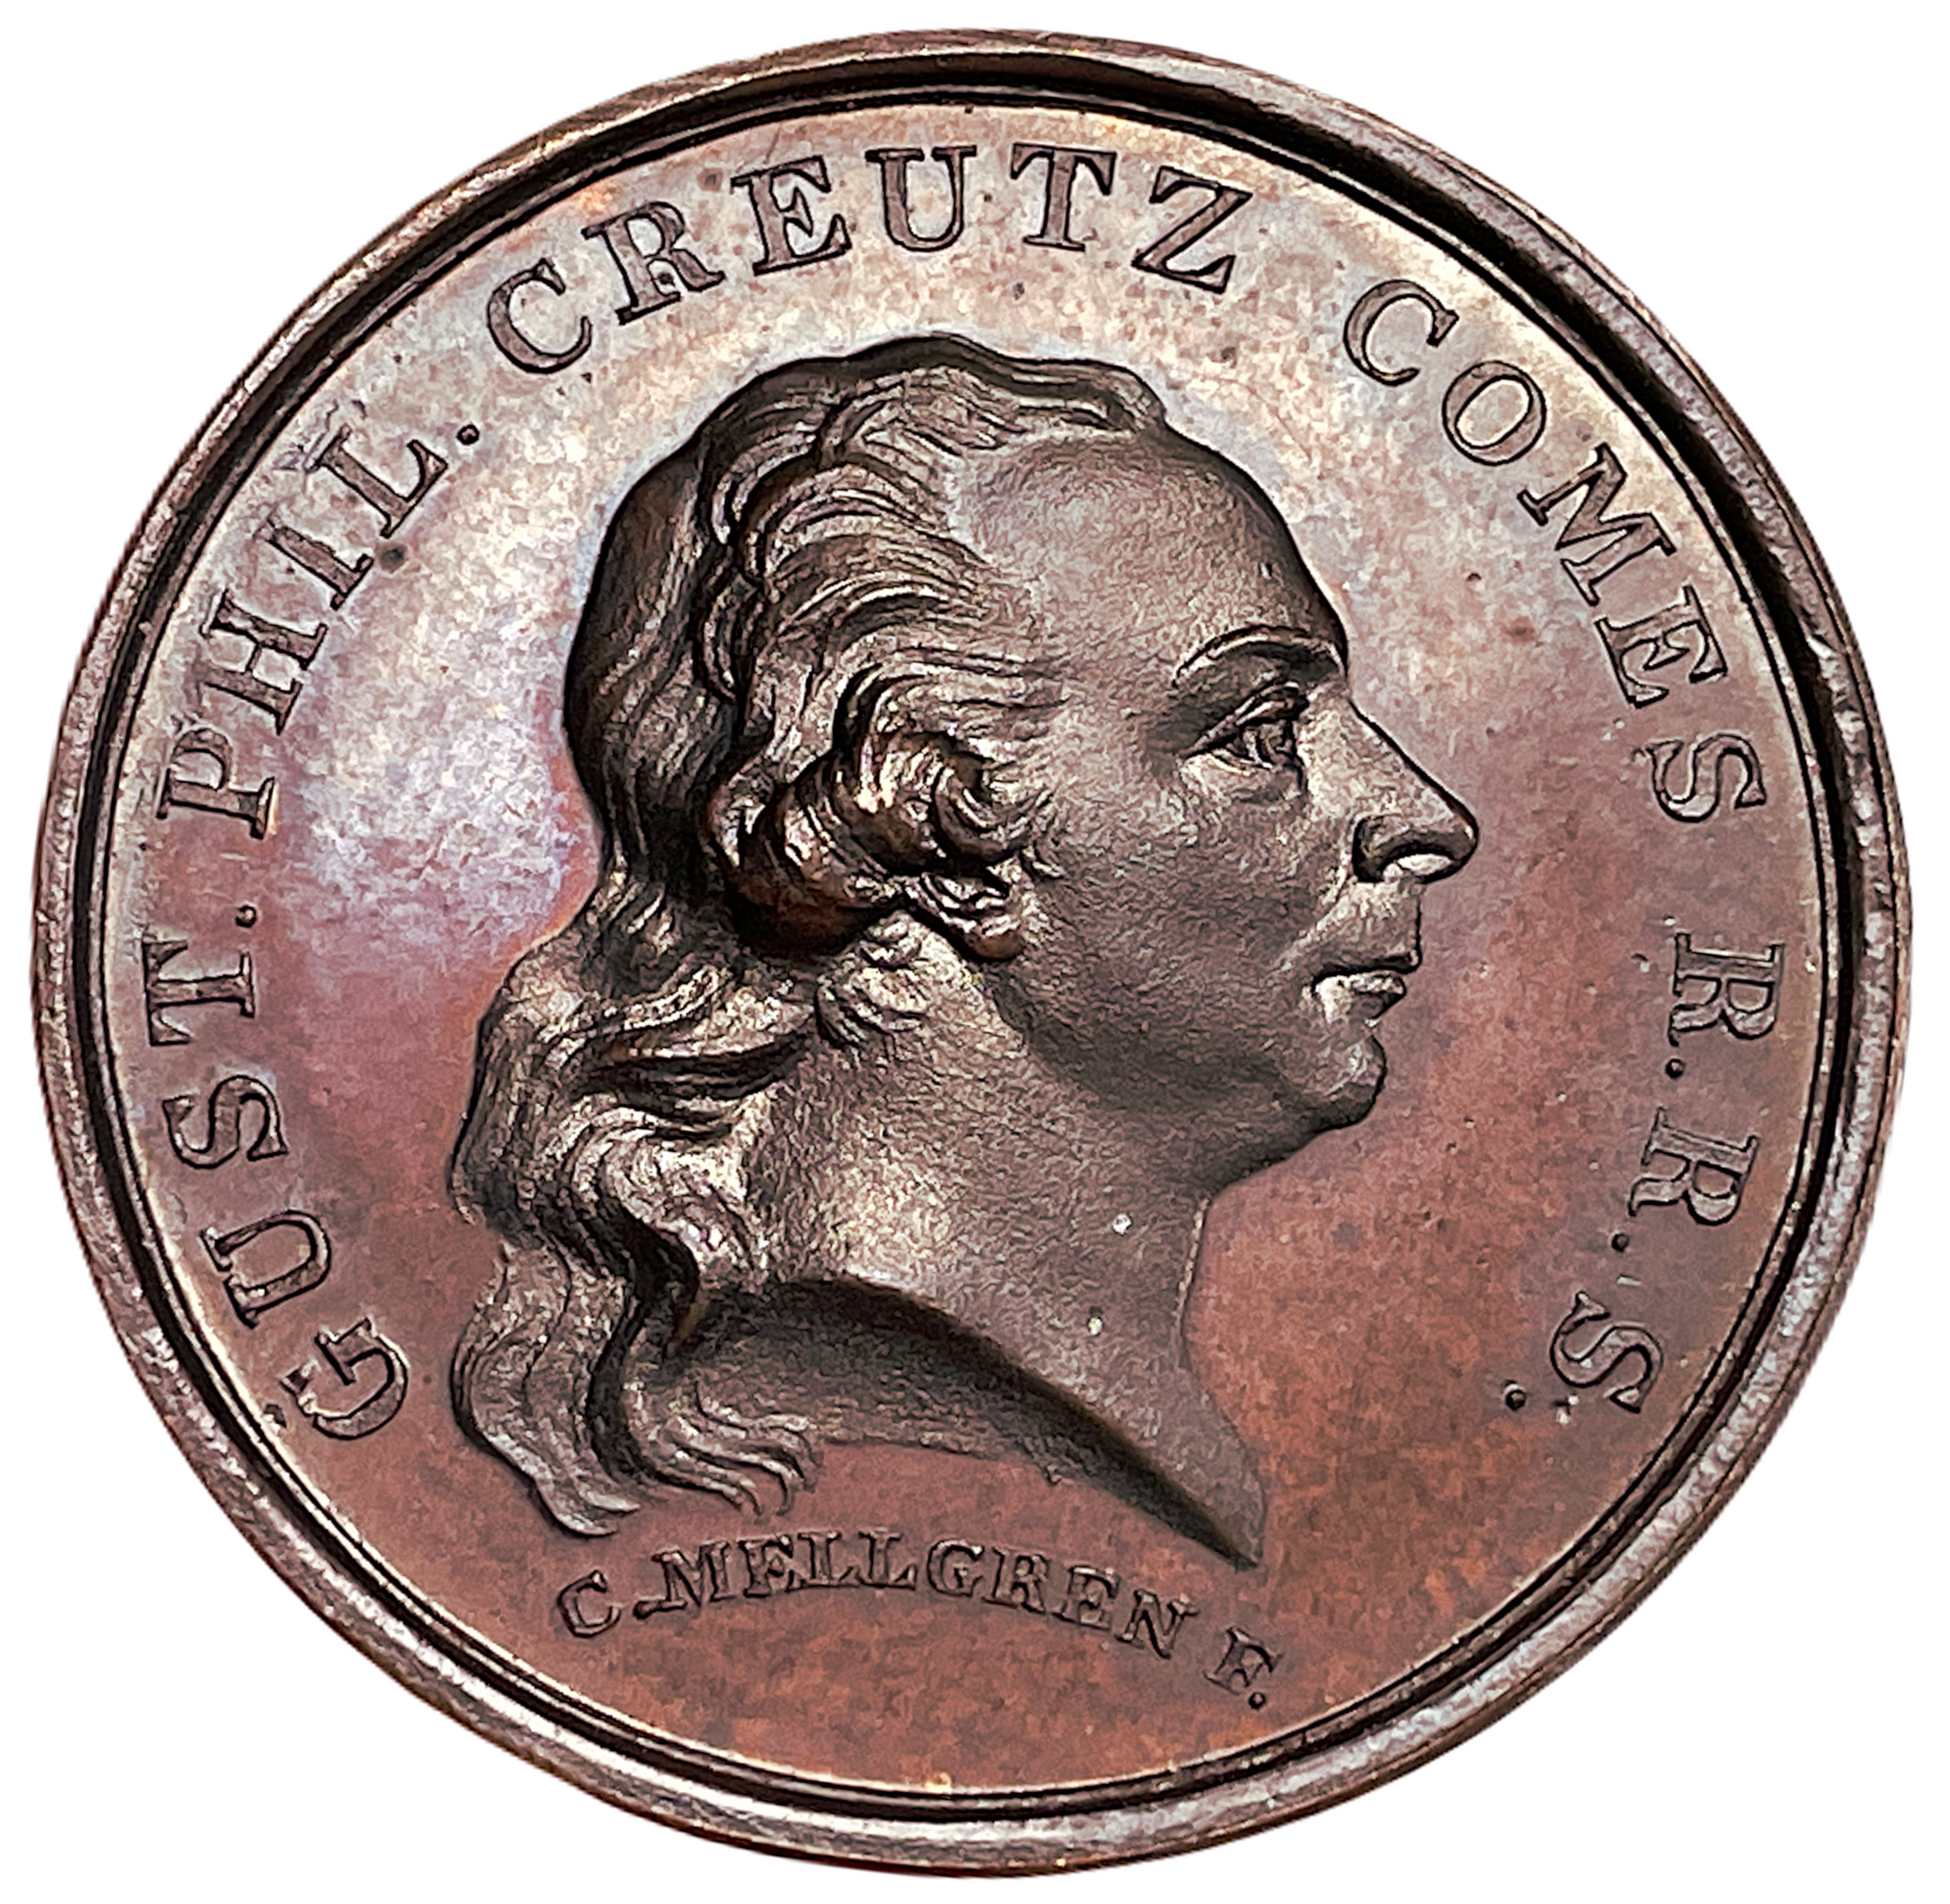 Gustaf Filip Creutz (1731-1785) av Carl Magnus Mellgren - Sveriges regeringschef och undertecknare av den svensk-amerikanska vänskaps- och handelstraktaten med Benjamin Franklin 1783